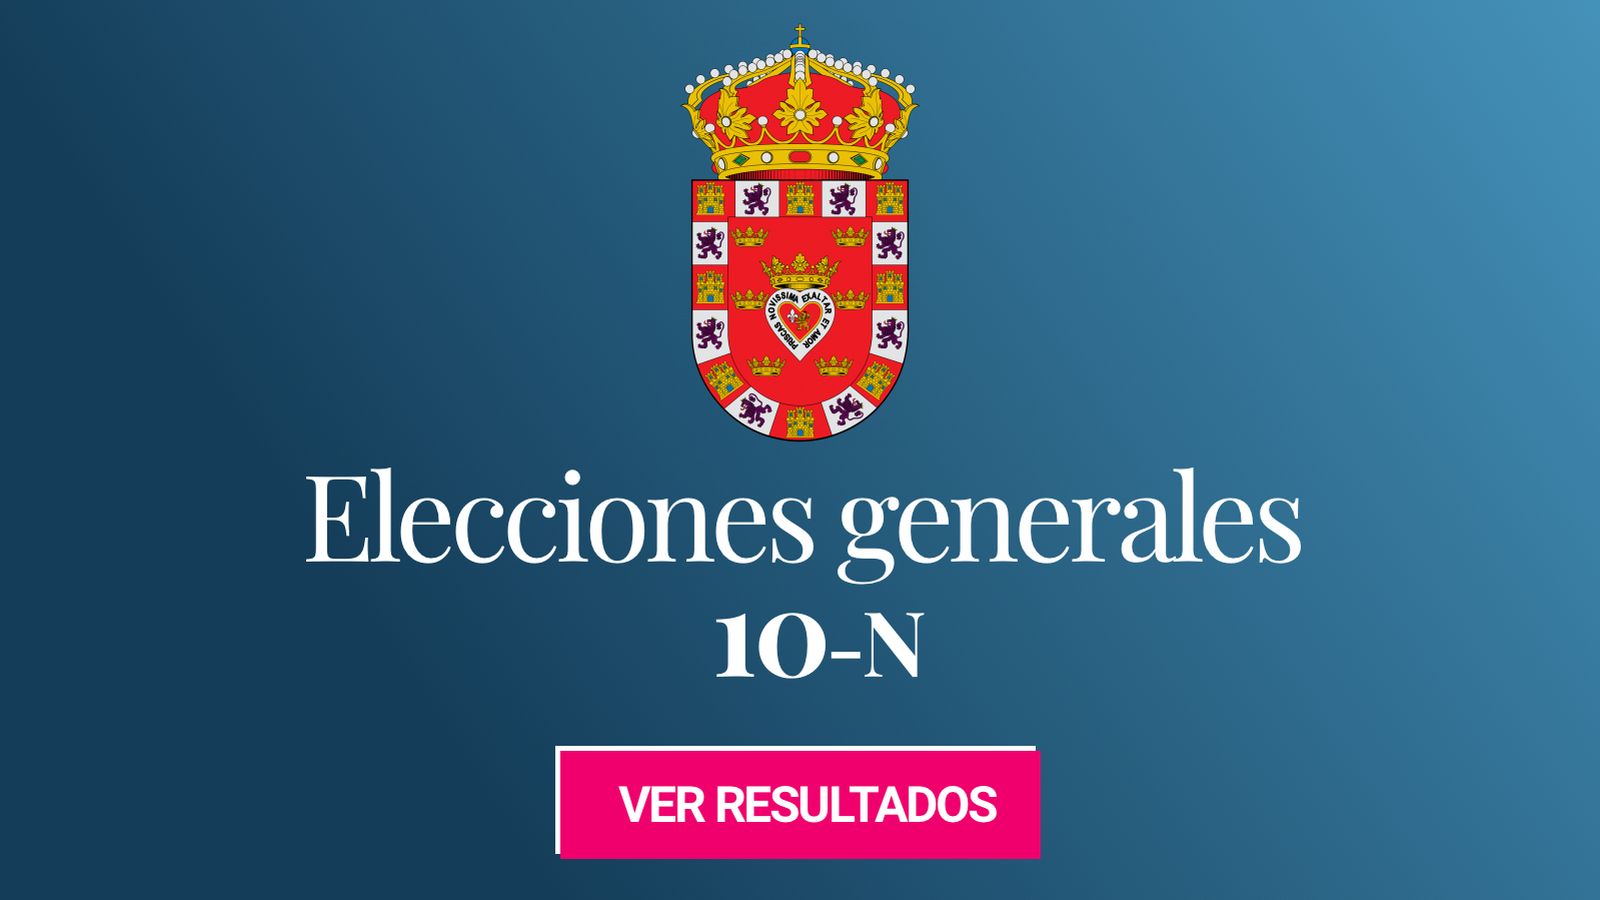 Foto: Elecciones generales 2019 en Murcia. (C.C./EC)